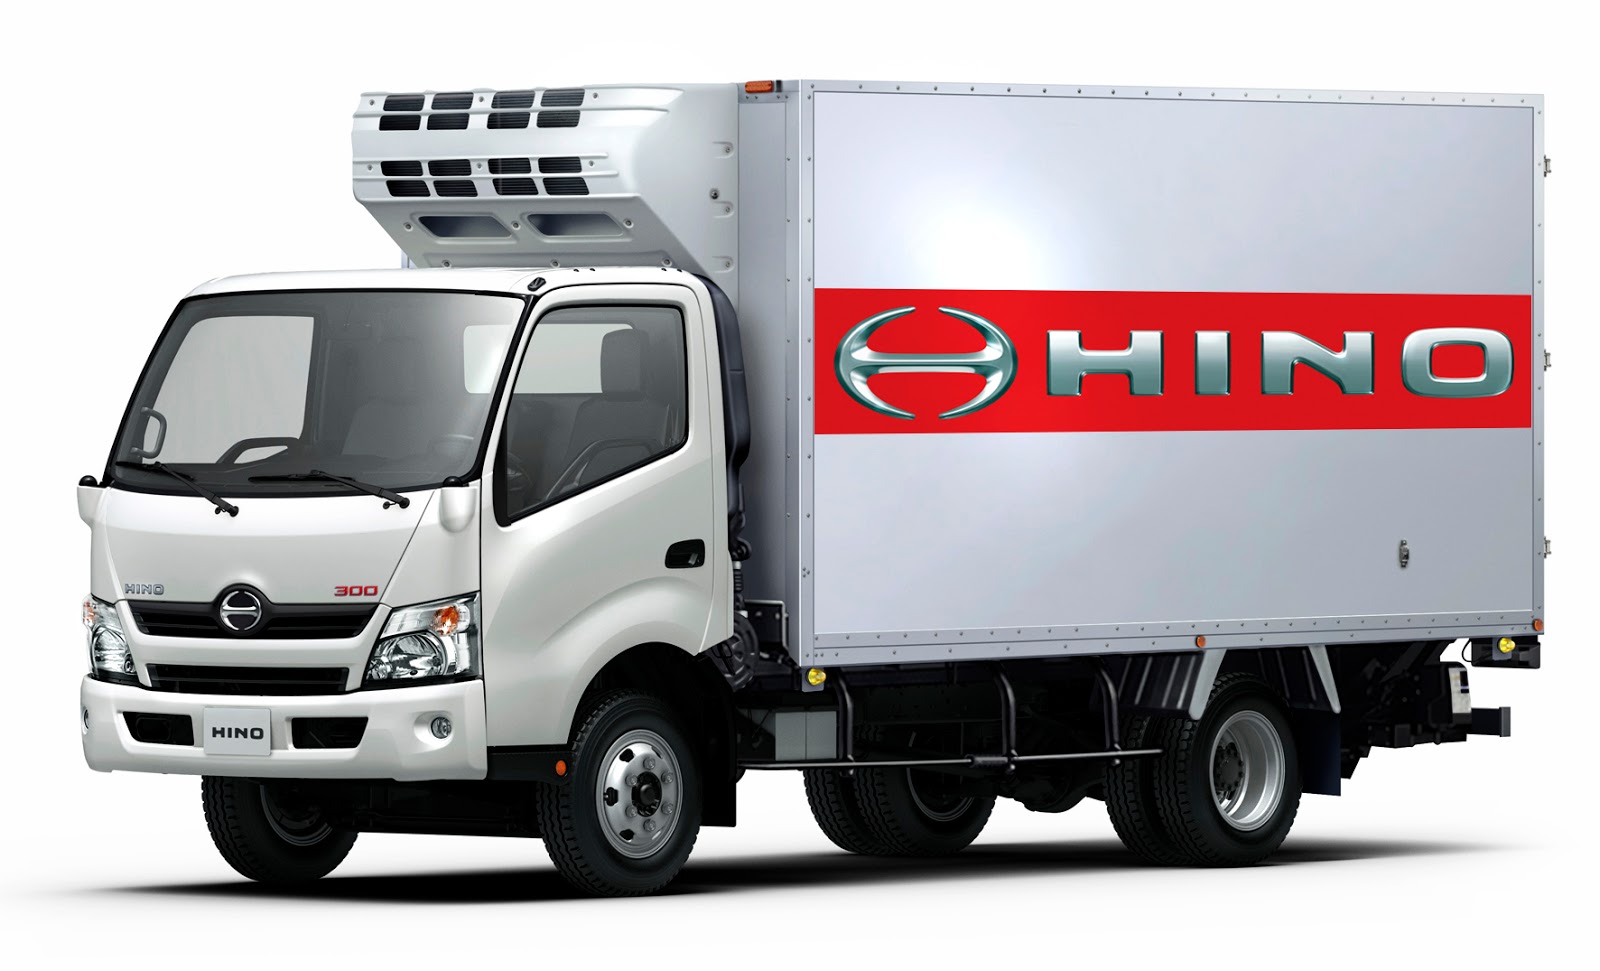 Camiones HINO Prometen Rendimiento Optimizado.